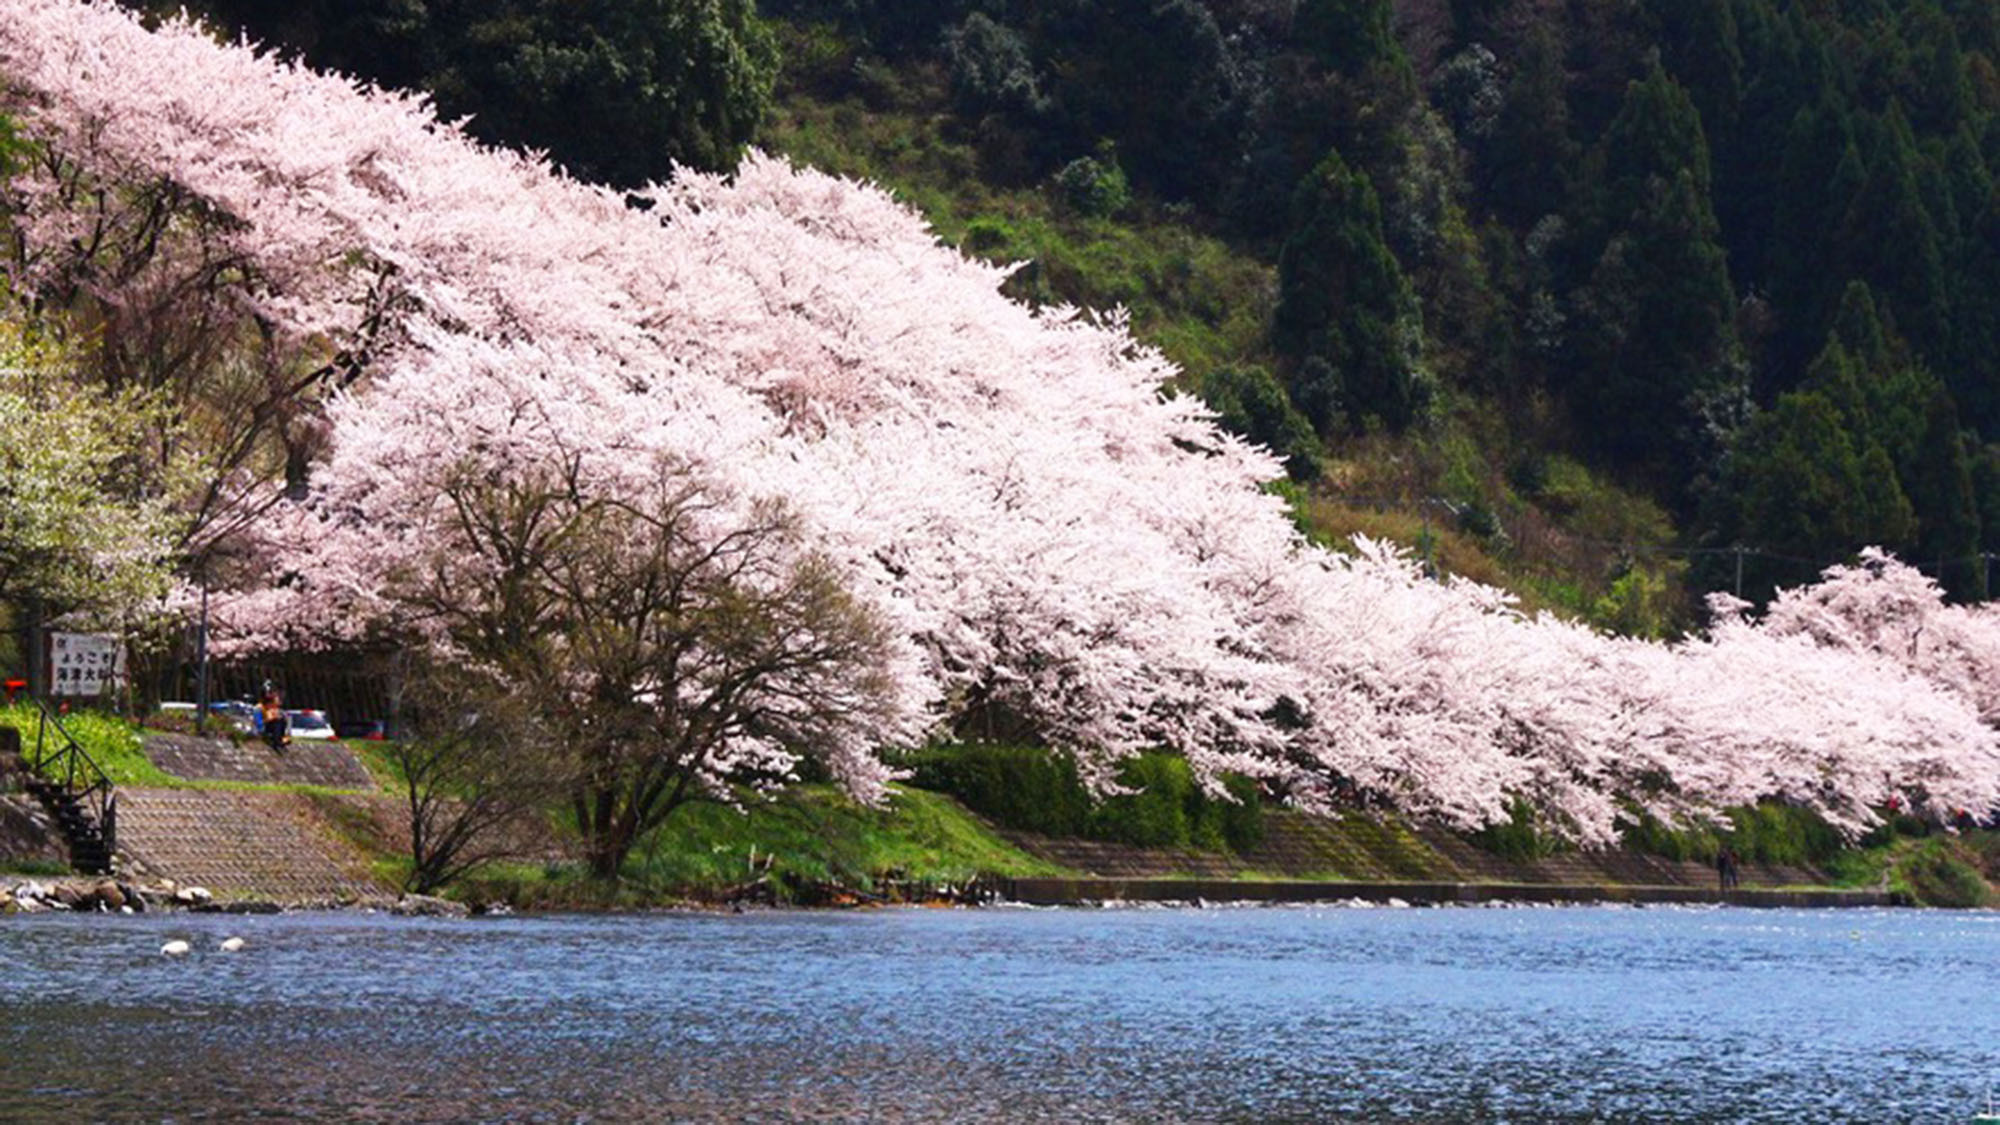 ・琵琶湖のほとりに咲き誇る桜は圧巻です